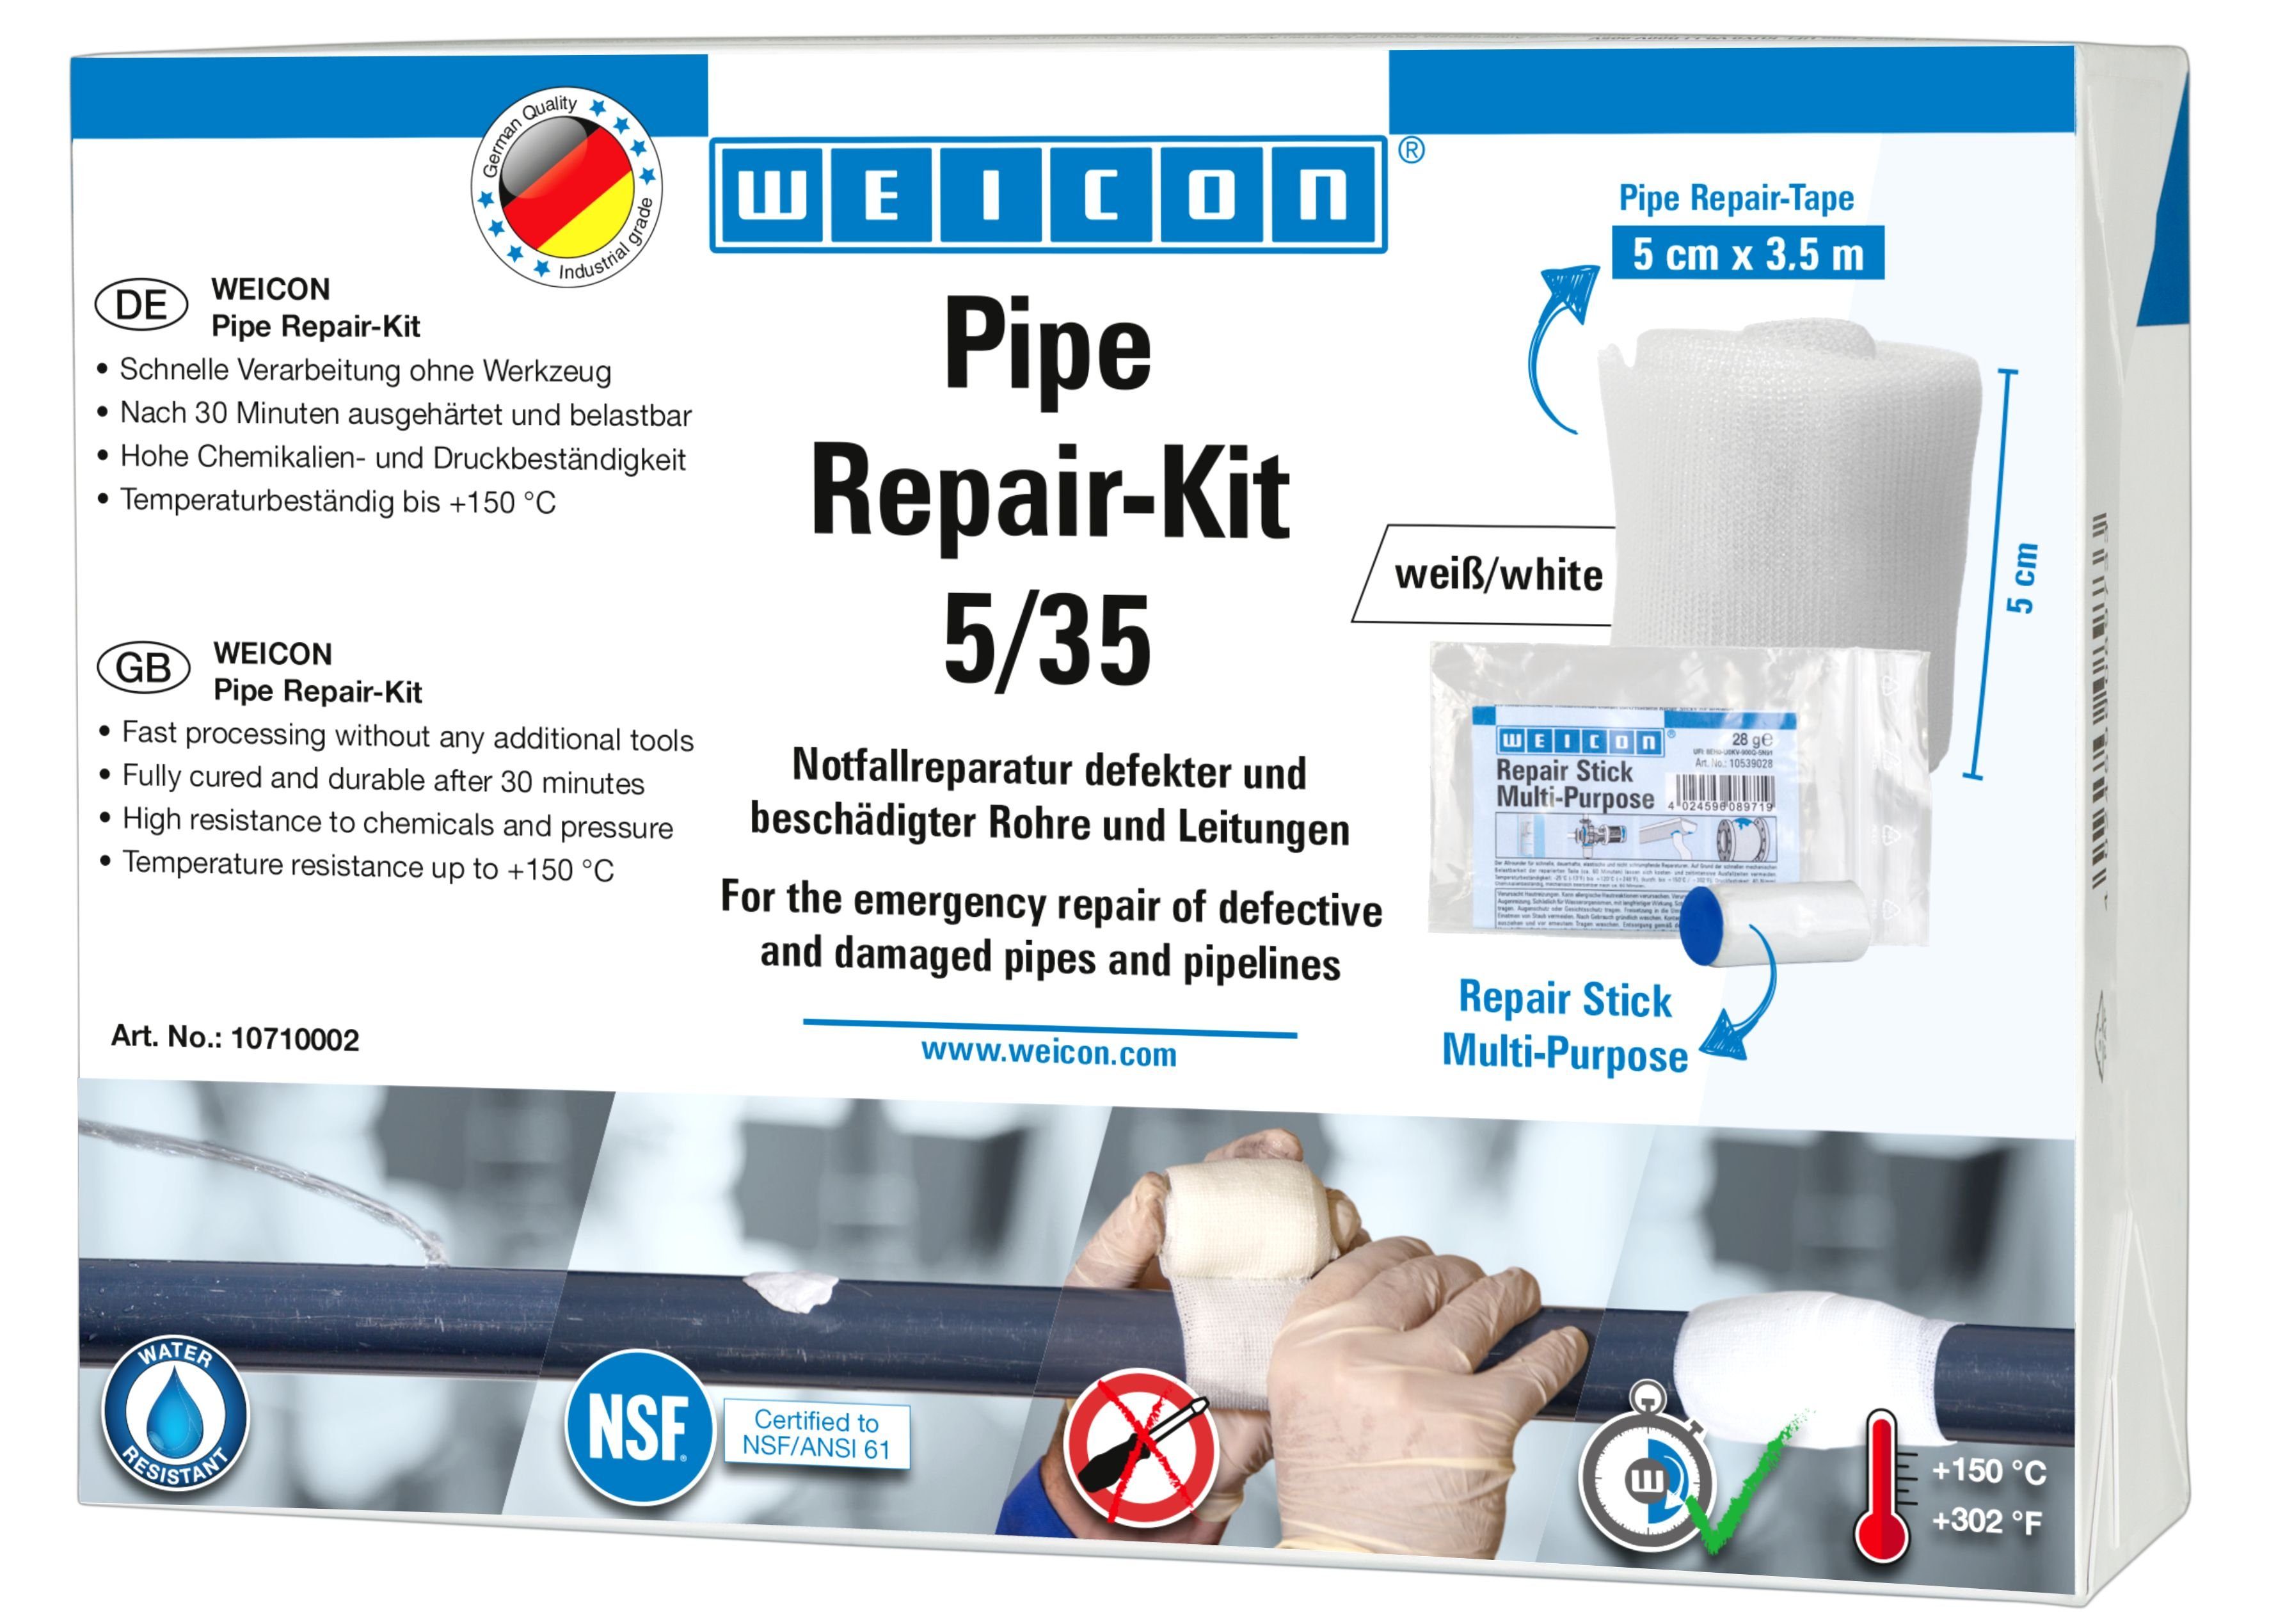 WEICON Reparatur-Set Pipe Repair-Kit, Notfall-Reparatur beschädigter Rohre und Leitungen 3,5 m x 5 cm